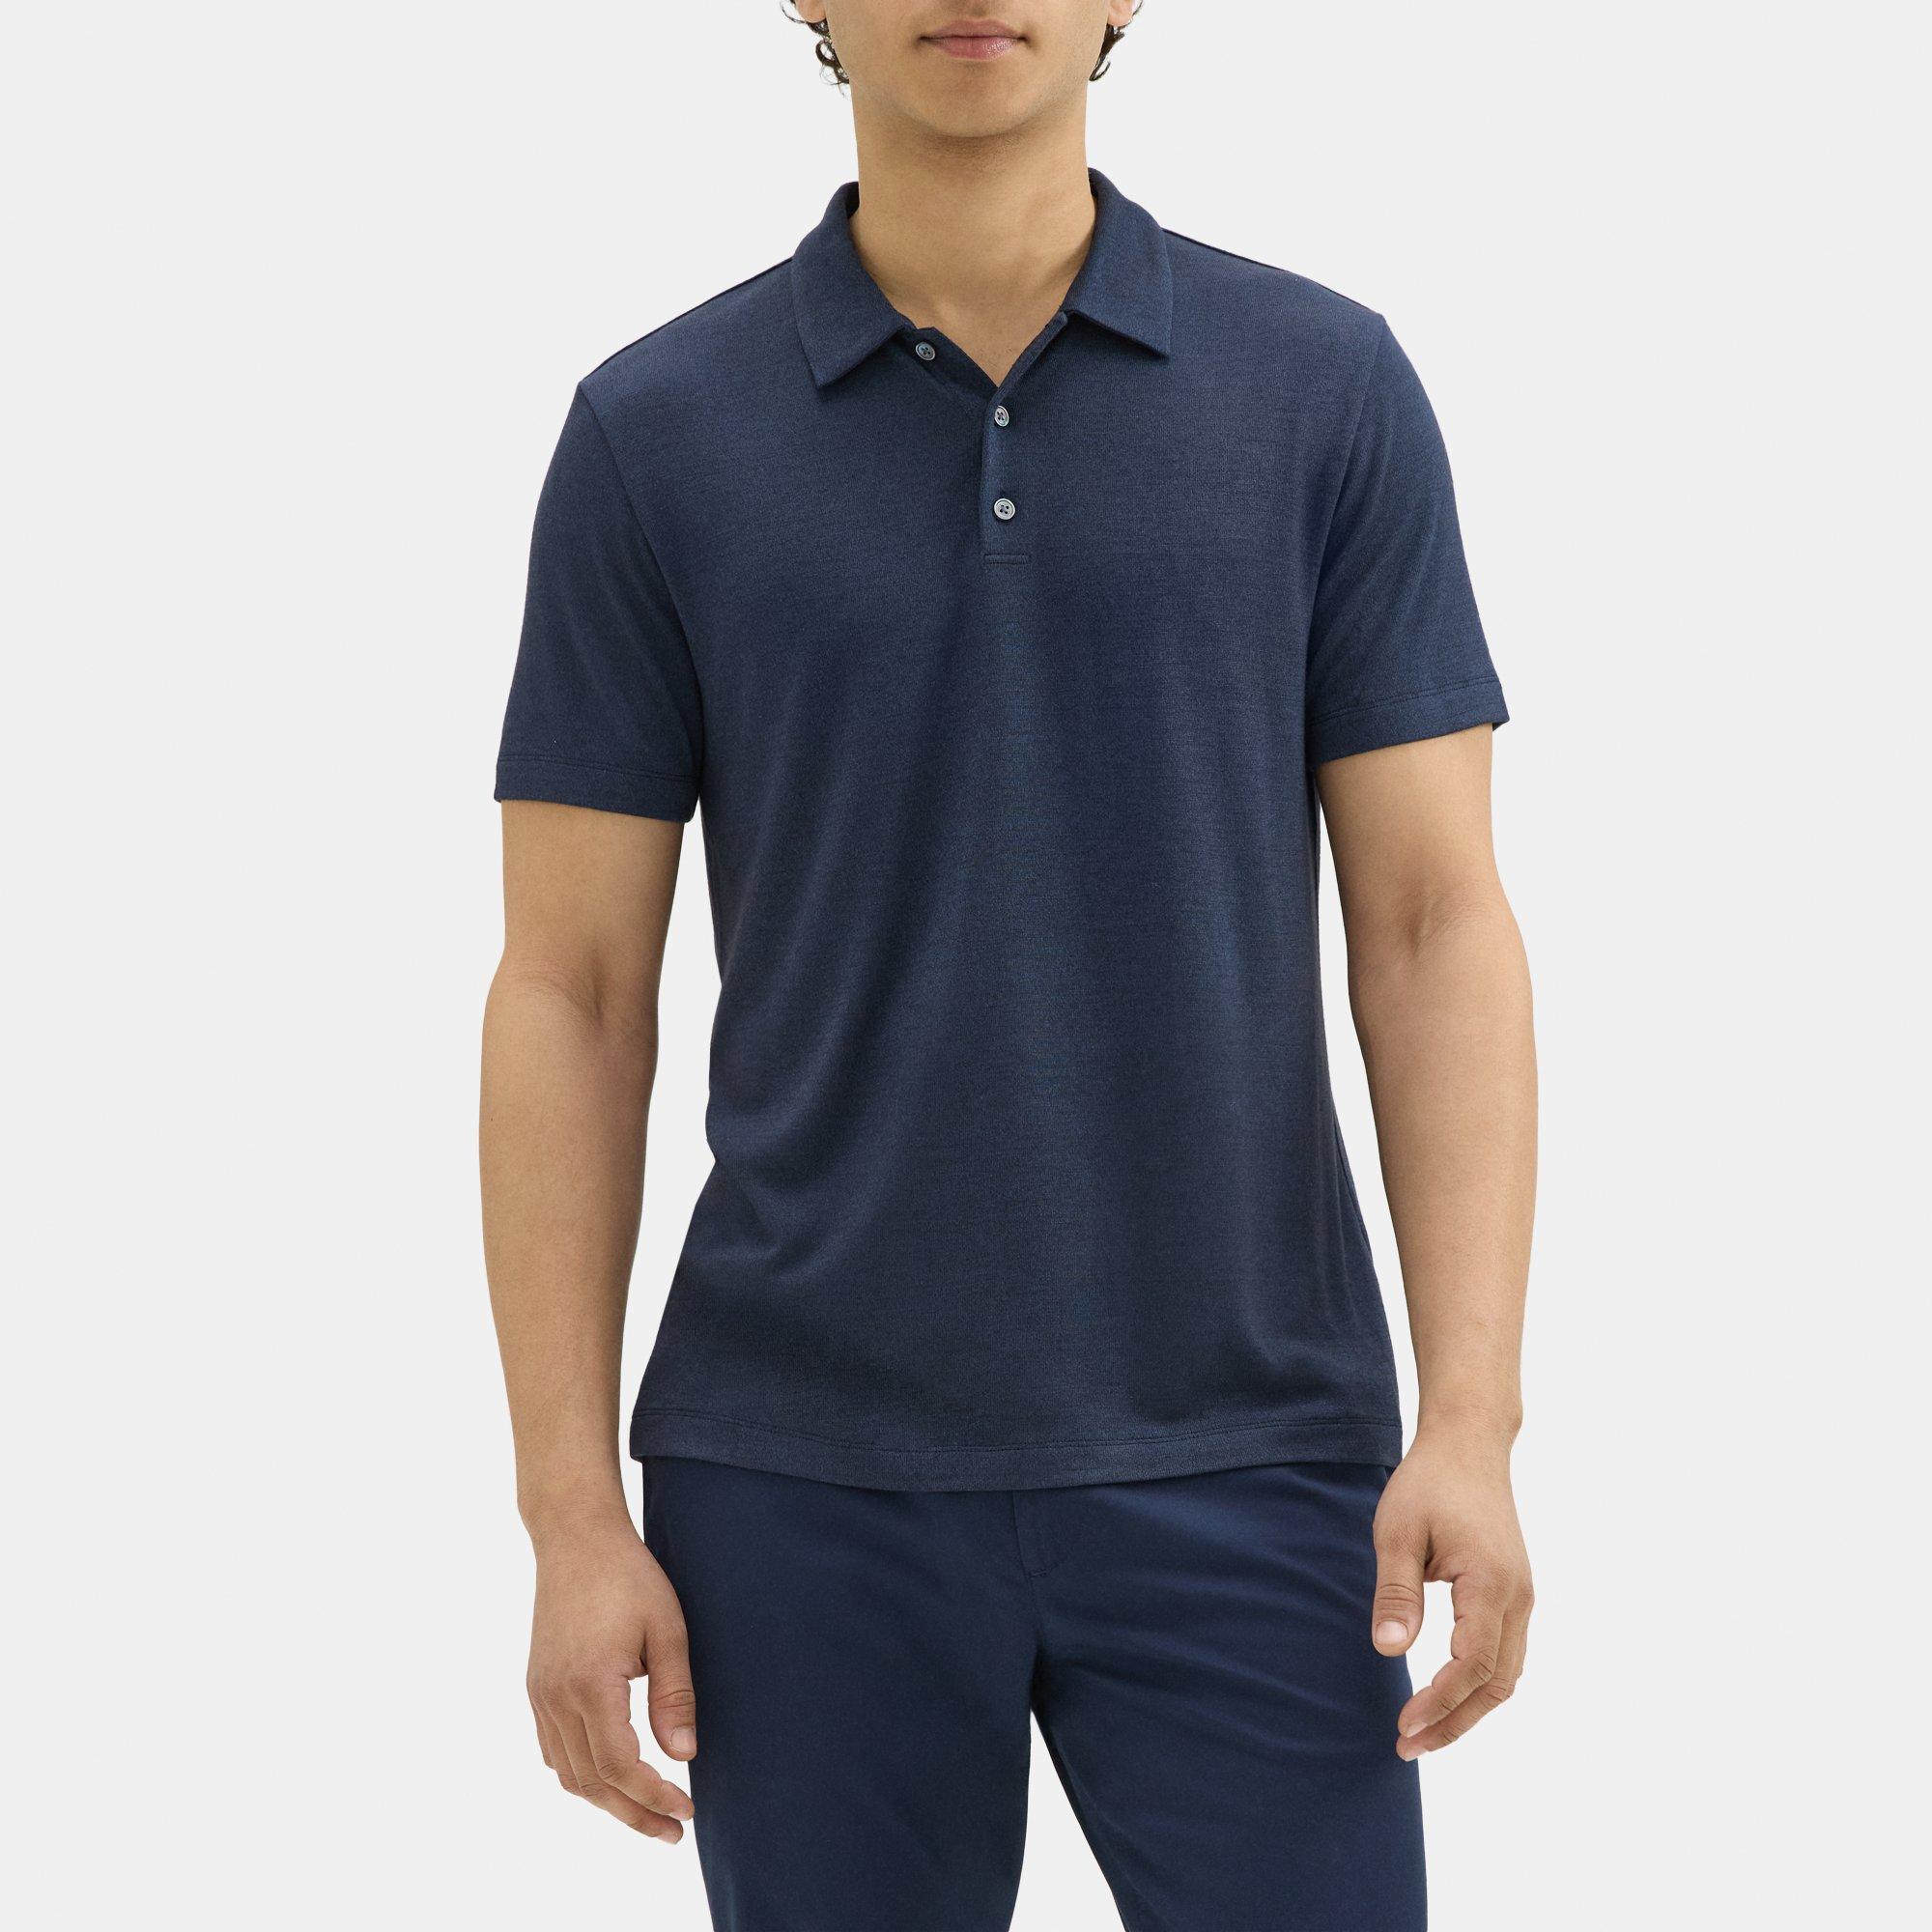 띠어리 Theory Polo Shirt in Modal Blend Jersey,ECLIPSE/SARGASSO